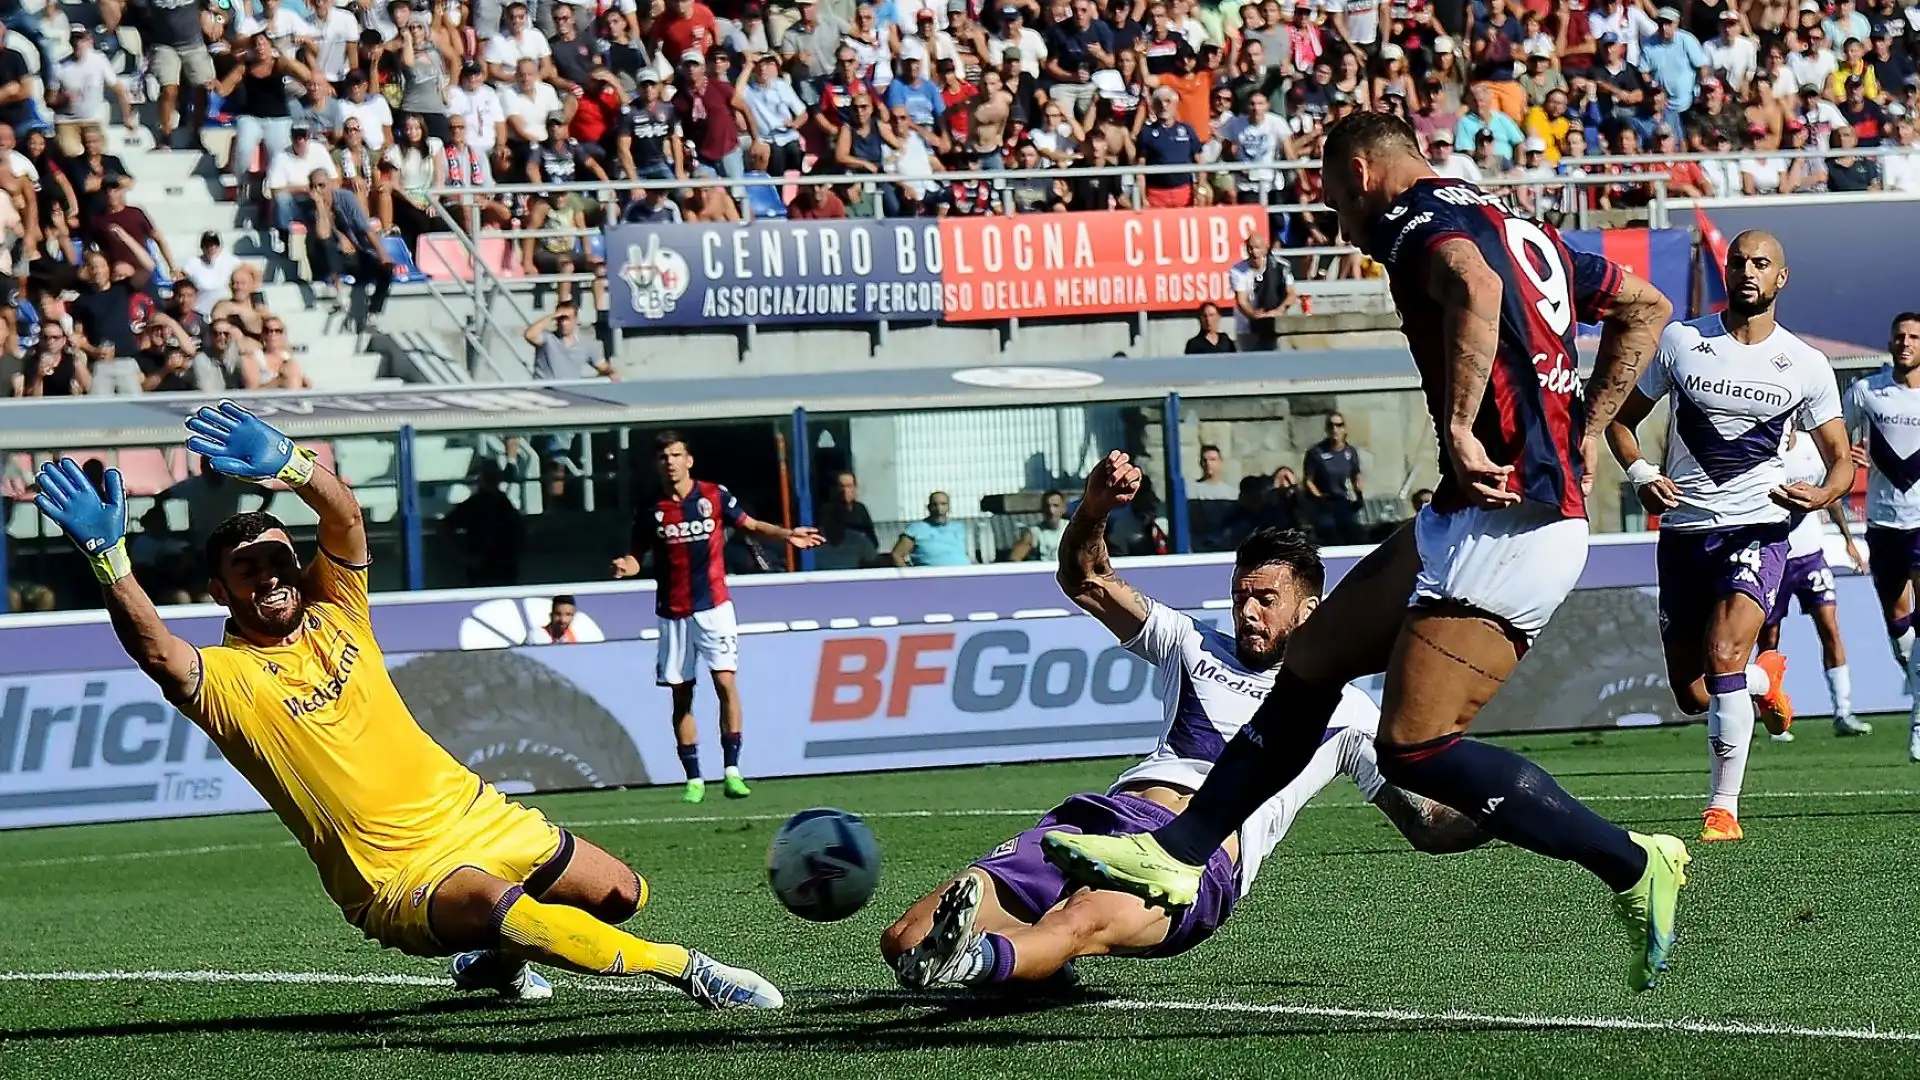 Nel pomeriggio, la Fiorentina ha protestato ferocemente dopo il gol di Arnautovic del Bologna